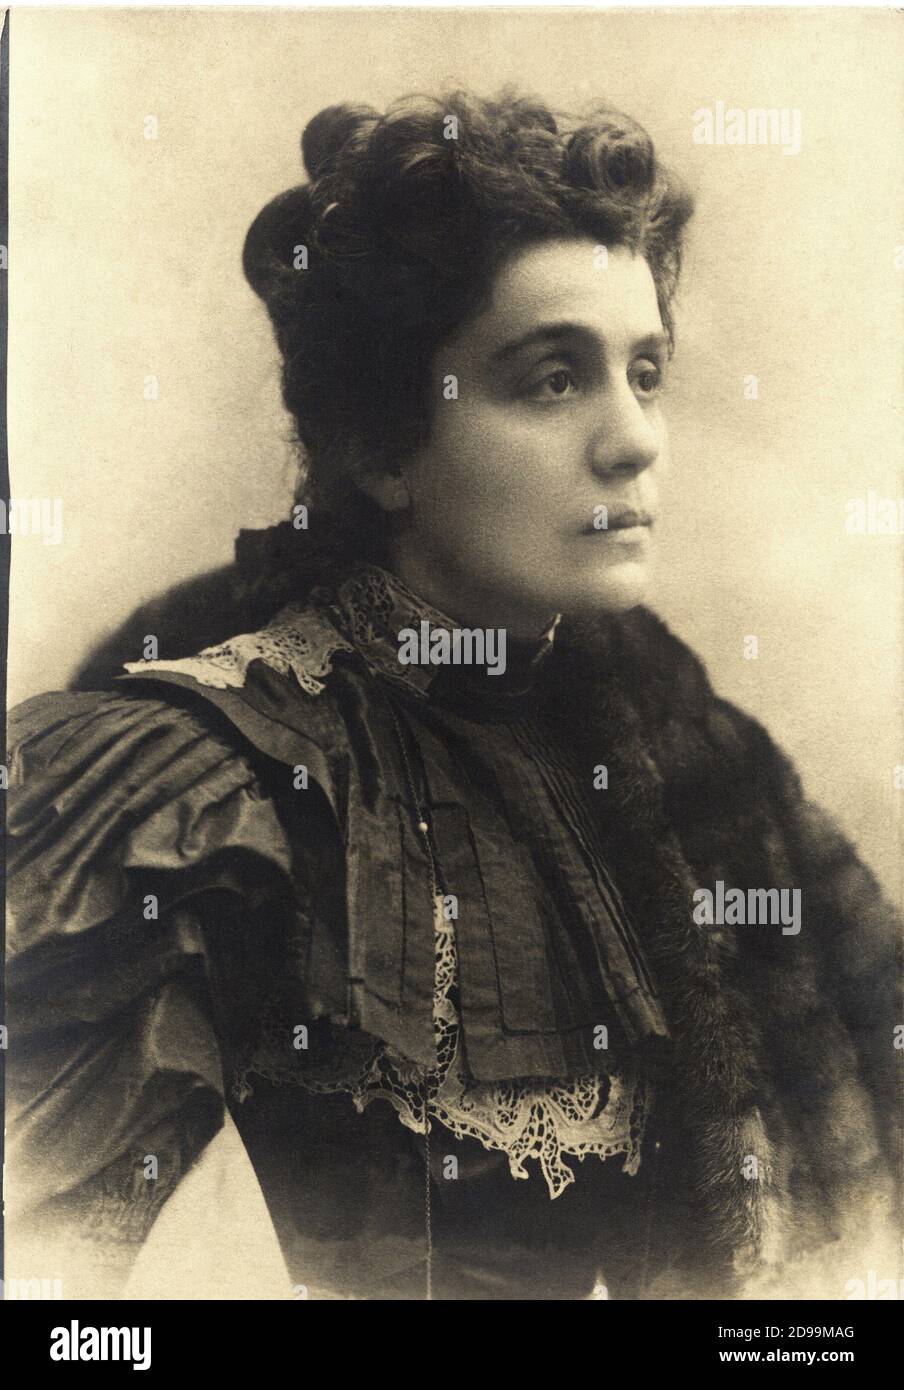 ELEONORA DUSE ( Vigevano 1858 - Pittsburgh 1924 ) die berühmteste italienische dramatische Schauspielerin in über der Welt , gefeierte Liebhaber der italienischen Dichter GABRIELE D'ANNUNZIO - TEATRO - THEATER - ATTRICE - pelliccia - Fell - Portrait - ritratto - pizzo - Spitze - chignon ---- Archivio GBB Stockfoto